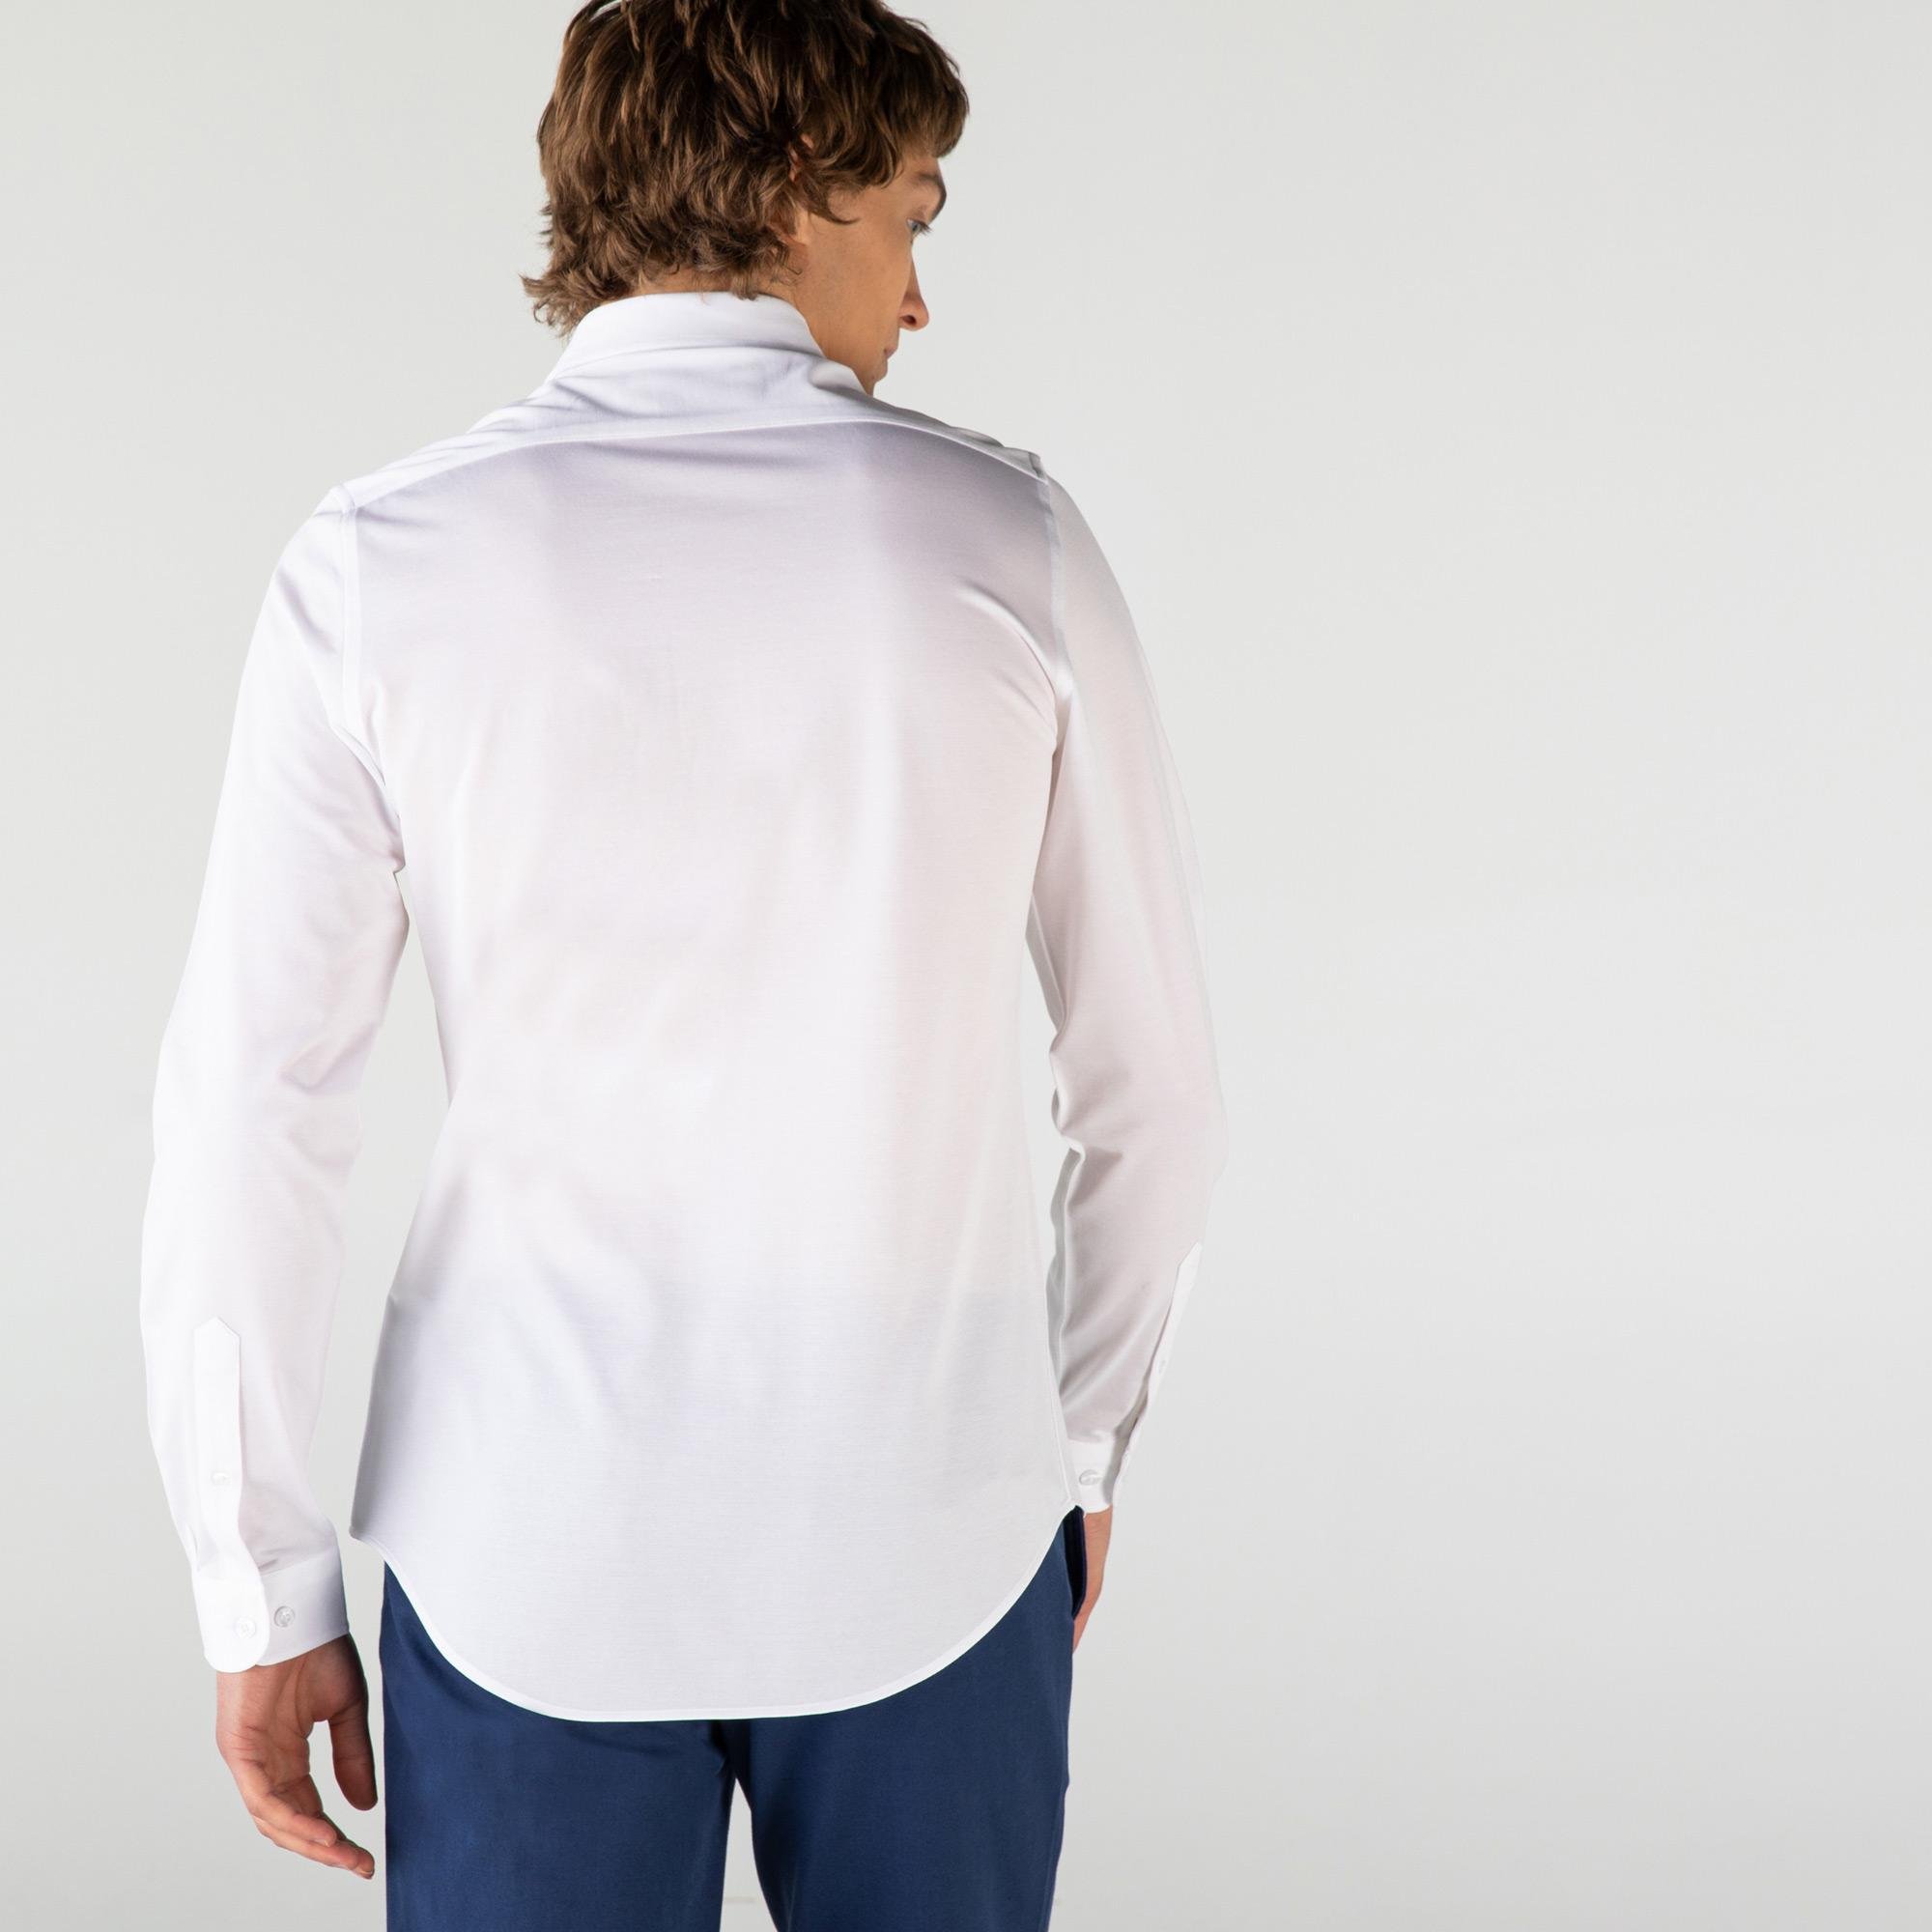 Lacoste pánská tkaná košile s dlouhými rukávy